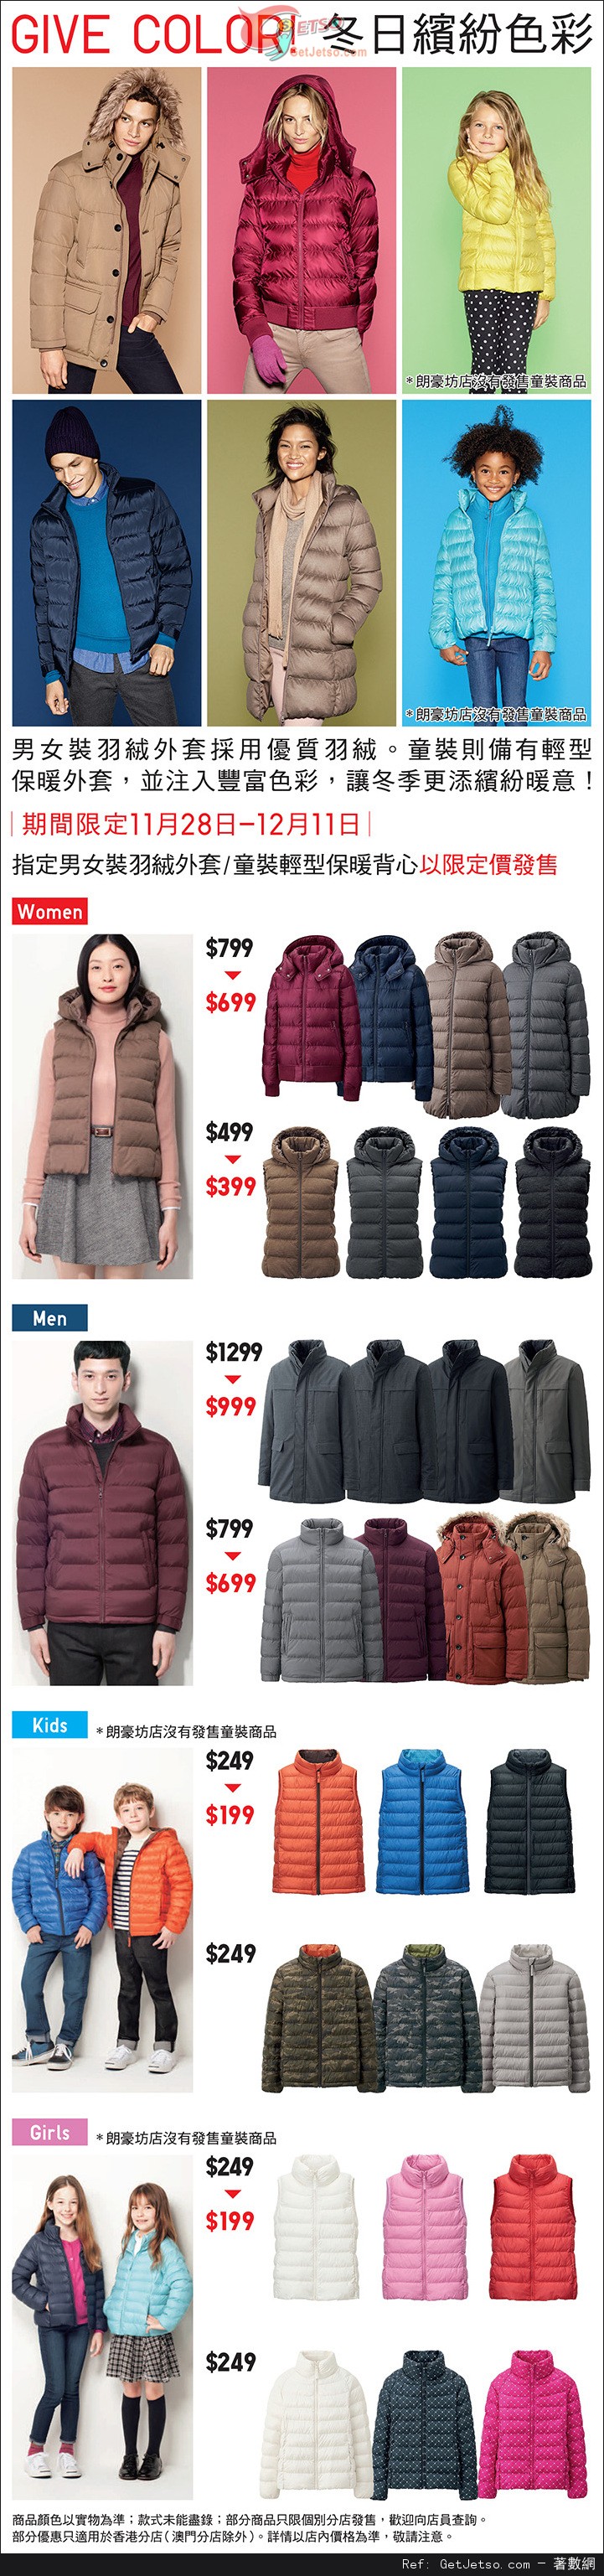 UNIQLO 指定男女裝/童裝羽絨外套限定價優惠(至14年12月11日)圖片1